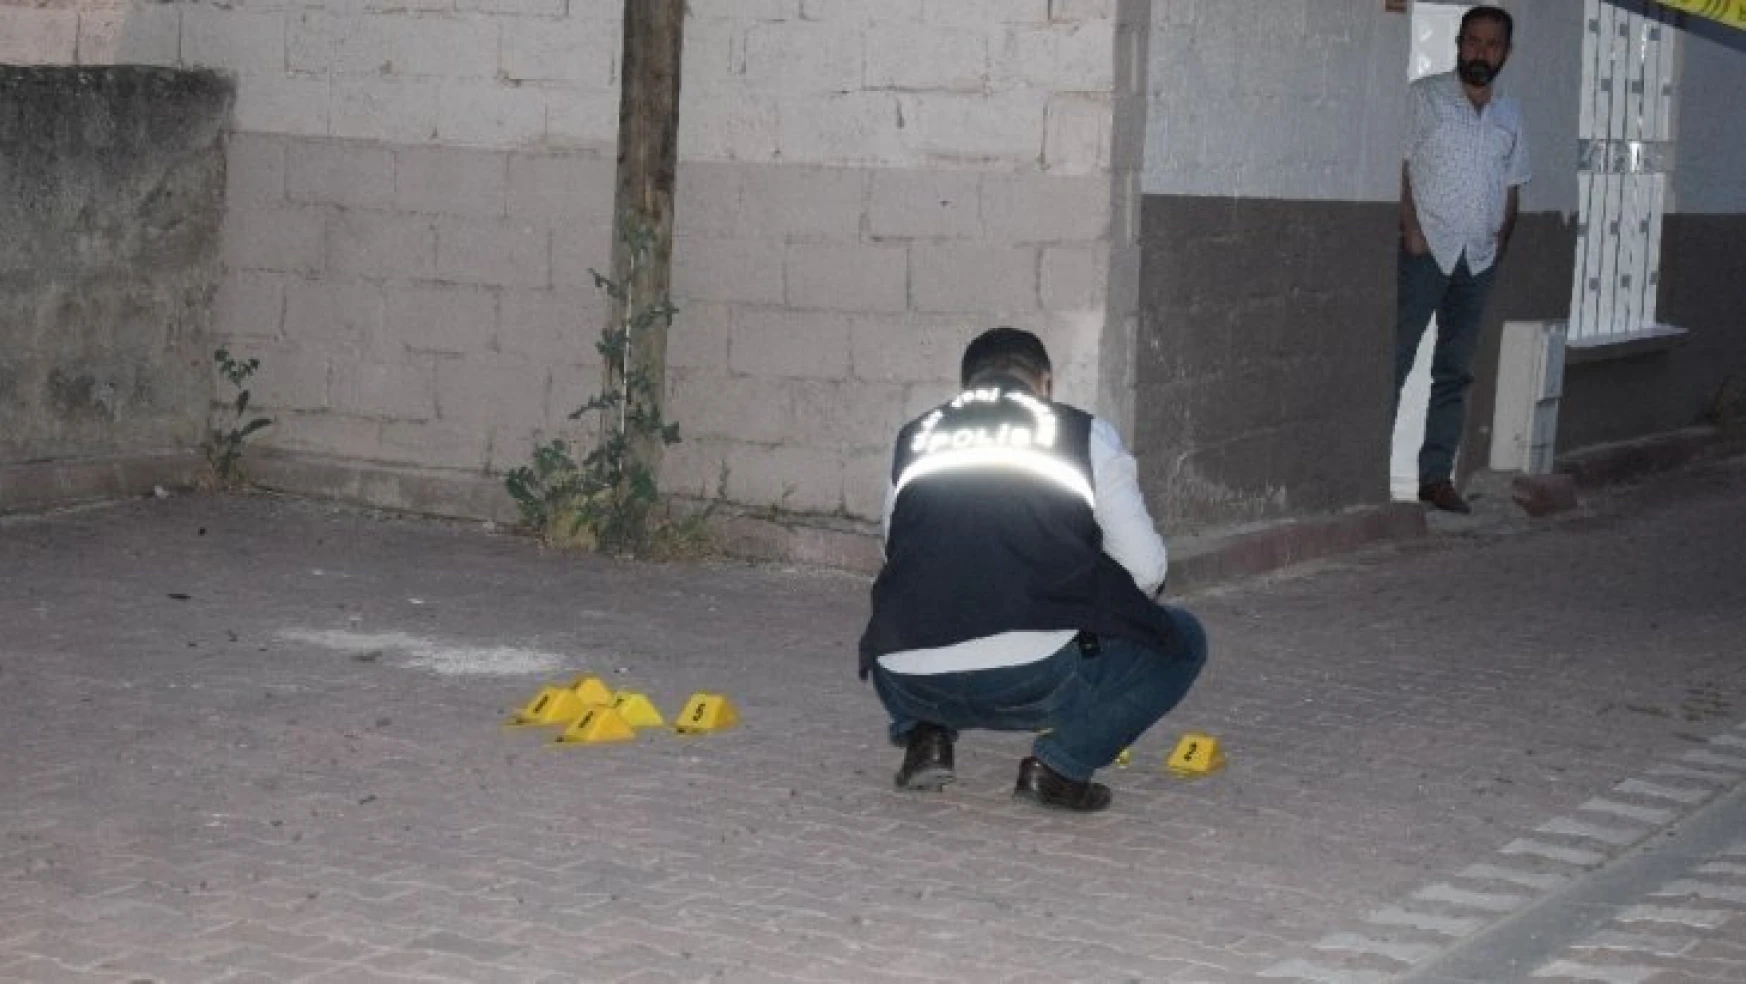 Malatya'da silahlı kavga: 1 ölü, 1 yaralı